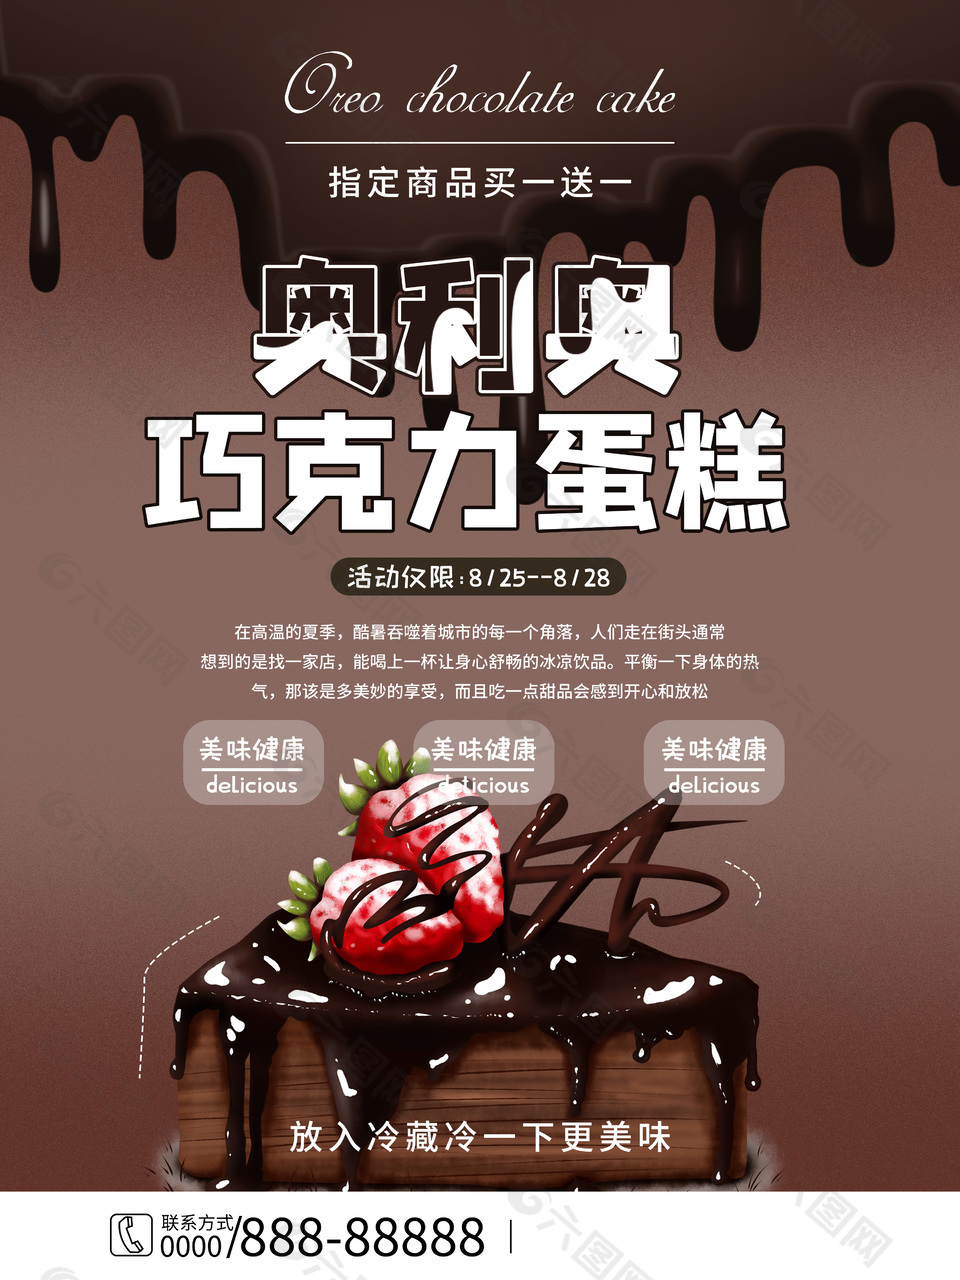 奥利奥巧克力蛋糕黑色主题背景海报设计大全